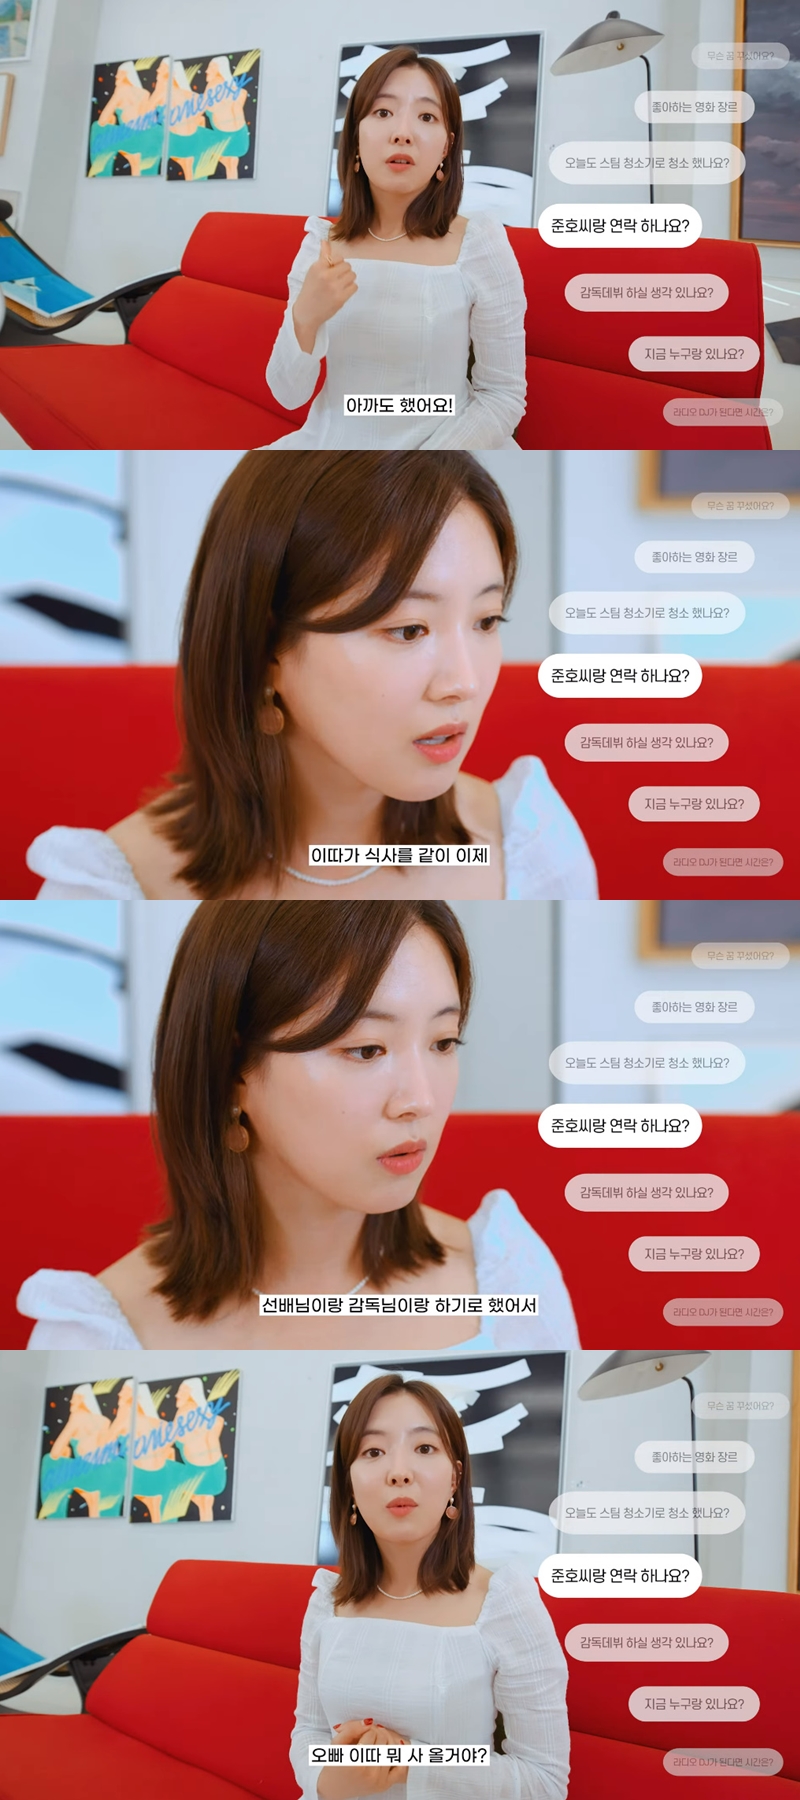 ▲ 배우 이세영. 출처| 유튜브 채널 '프레인TPC' 영상 캡처